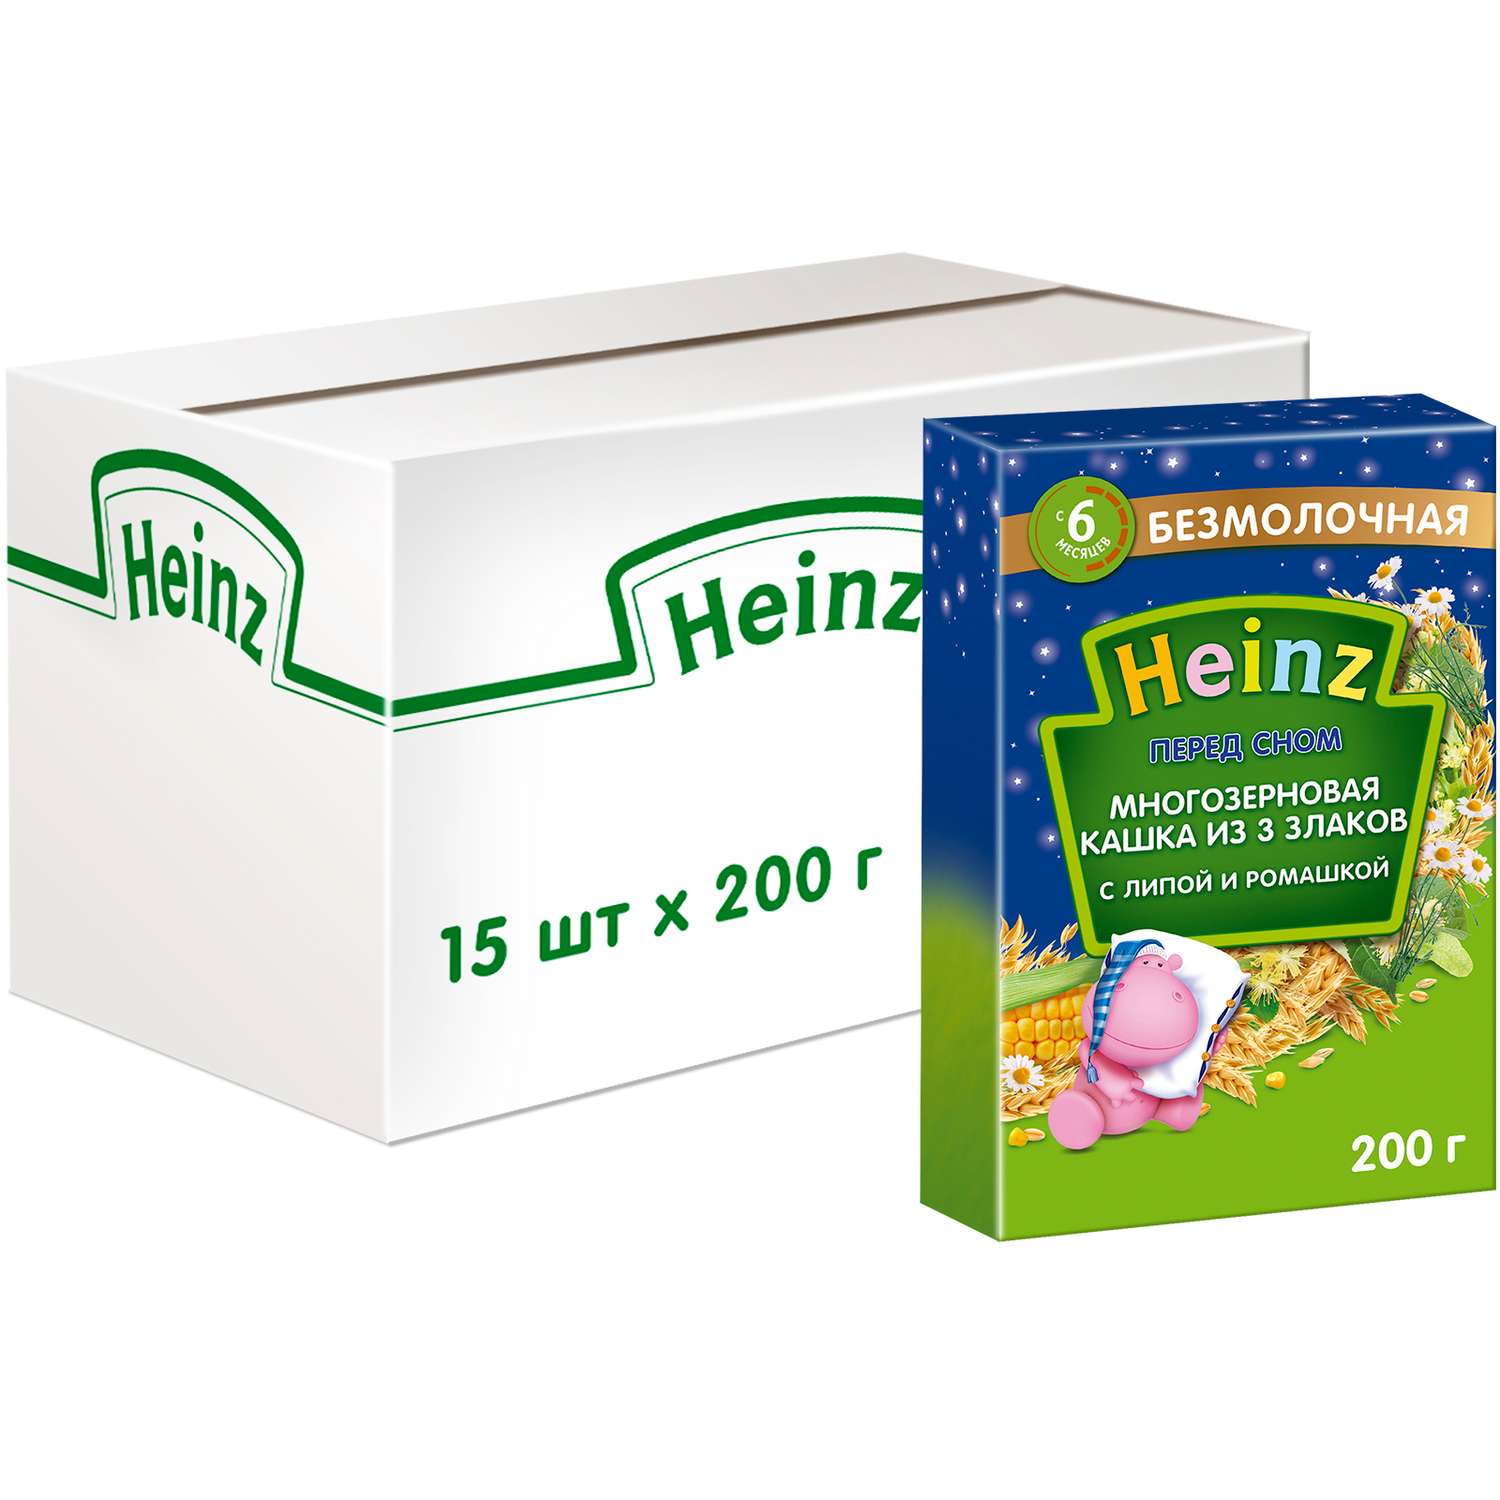 Каша Heinz многозерновая 3 злака с липой 200 г - фото 6